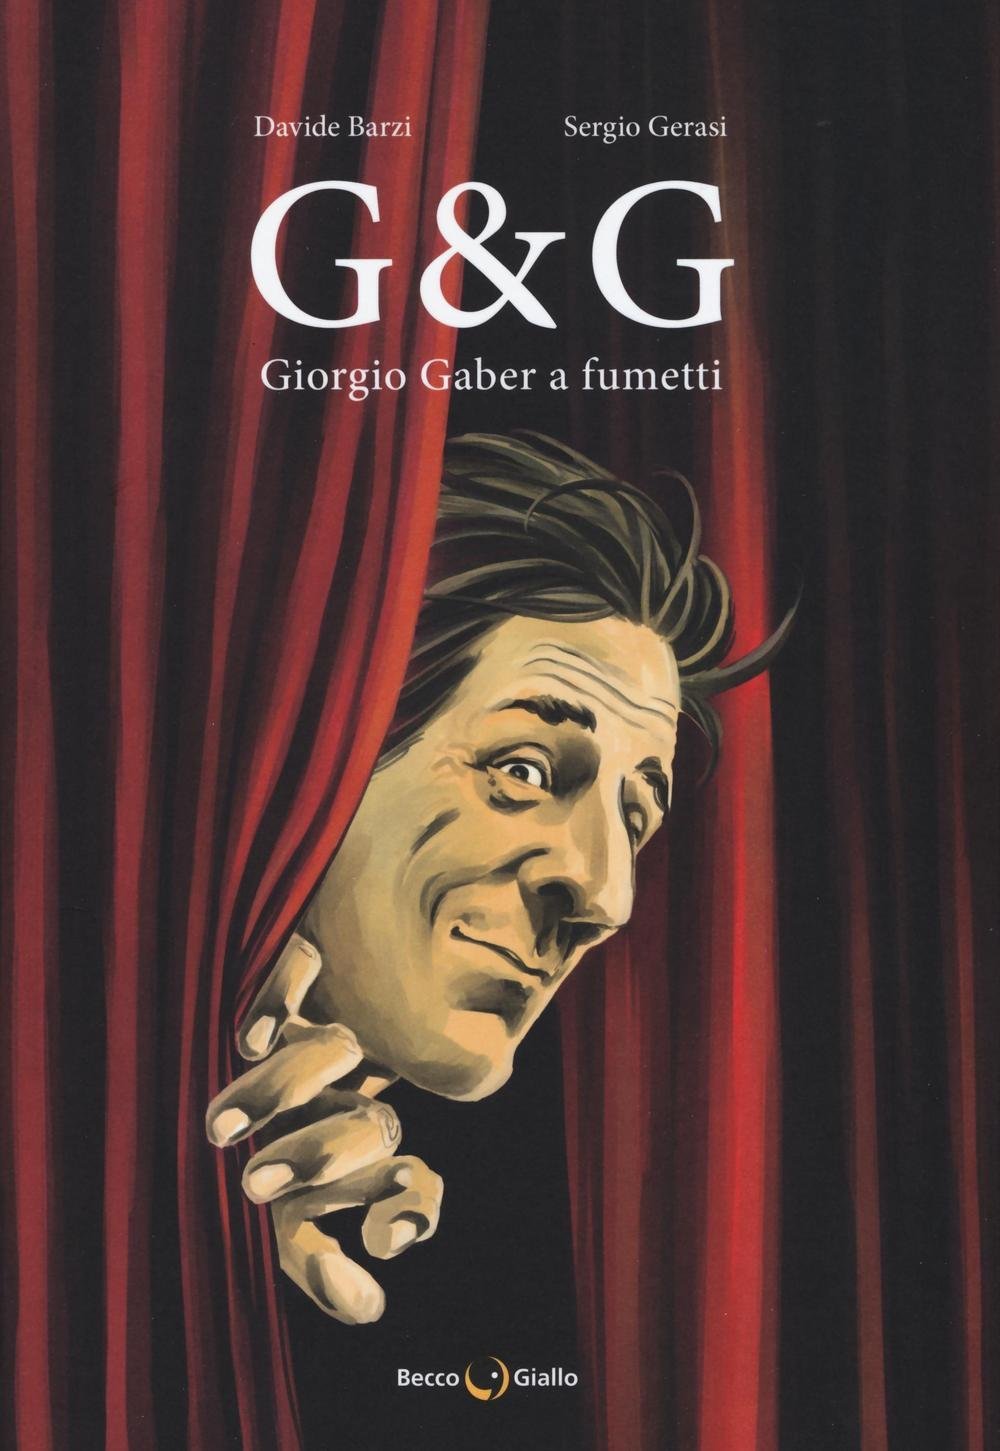 Davide Barzi, Sergio Gerasi, G & G. Giorgio Gaber a fumetti (BeccoGiallo, 2016)